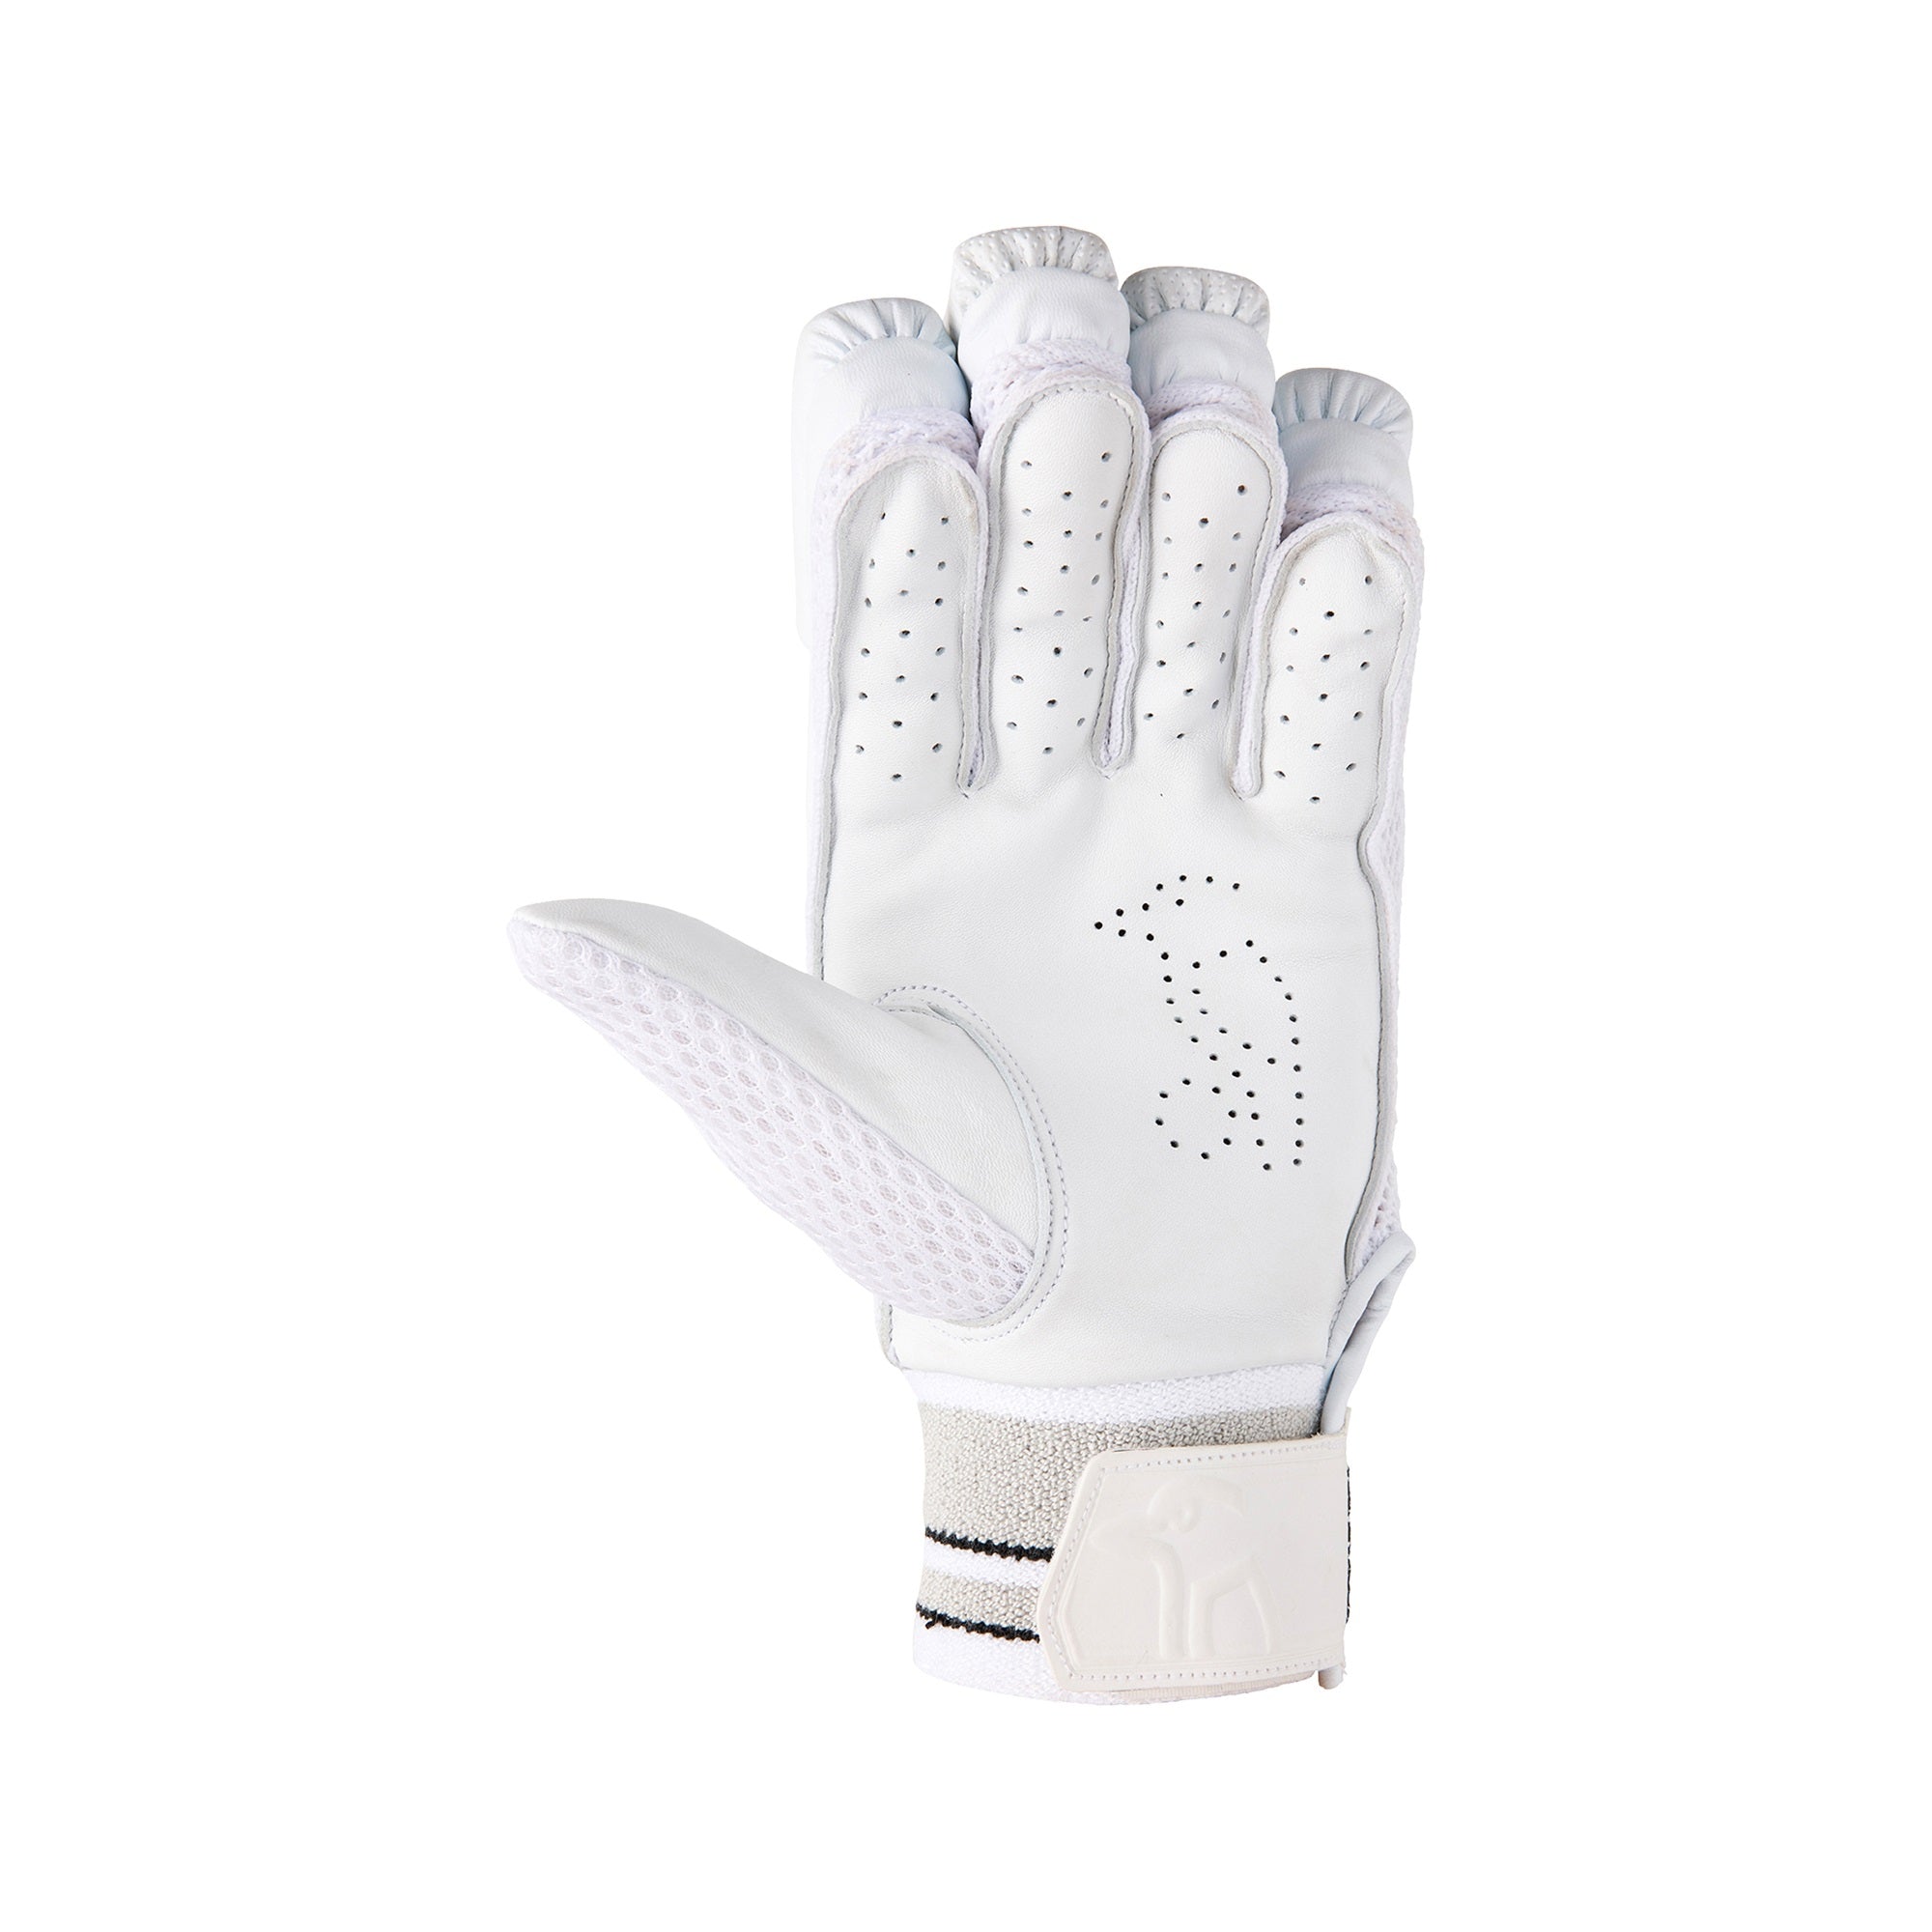 Kookaburra Ghost Pro 5.0 Cricket Batting Gloves - The Cricket Warehouse